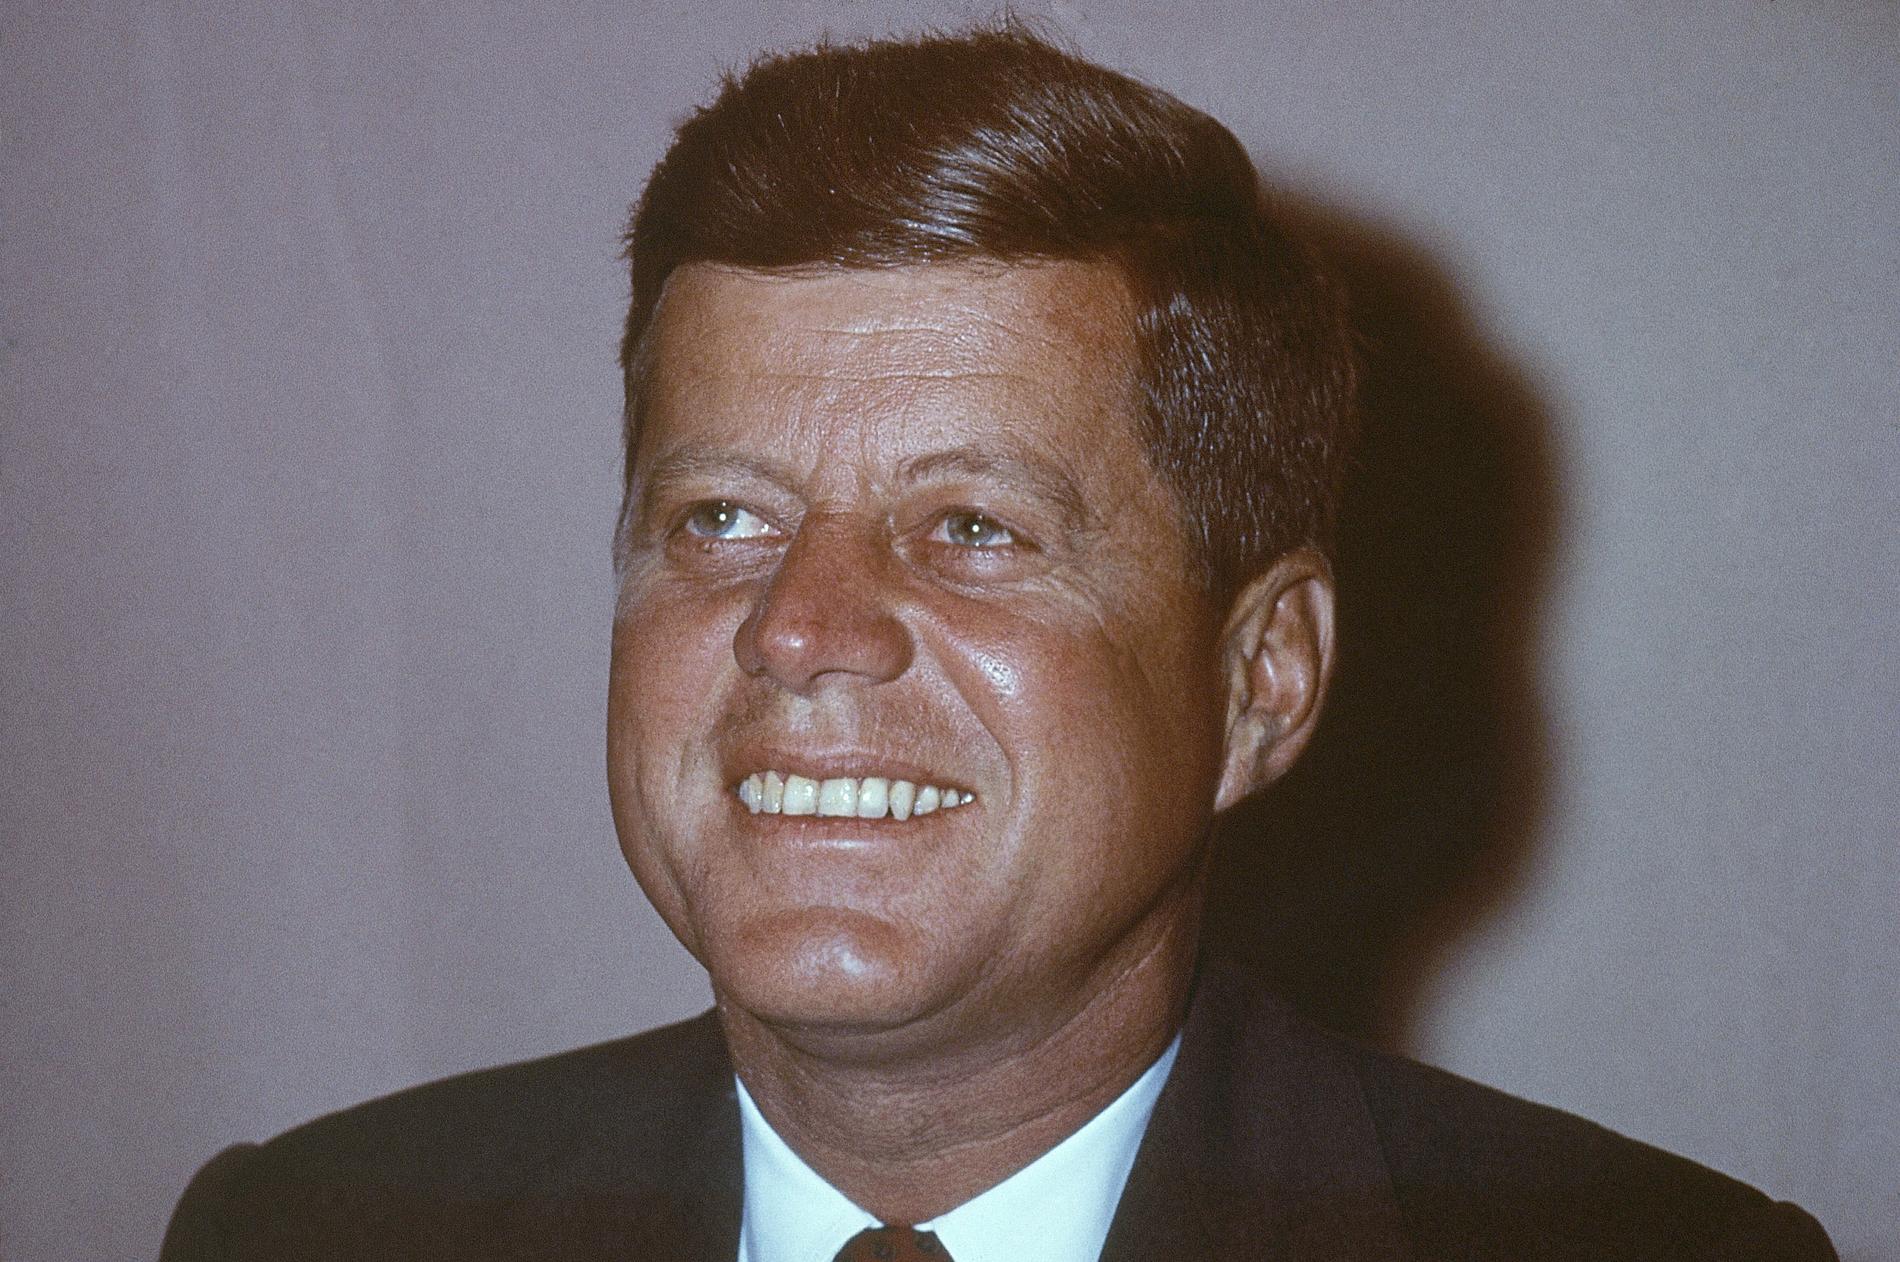 Det var 1962 som den dåvarande amerikanske presidenten John F. Kennedy bland annat sa: